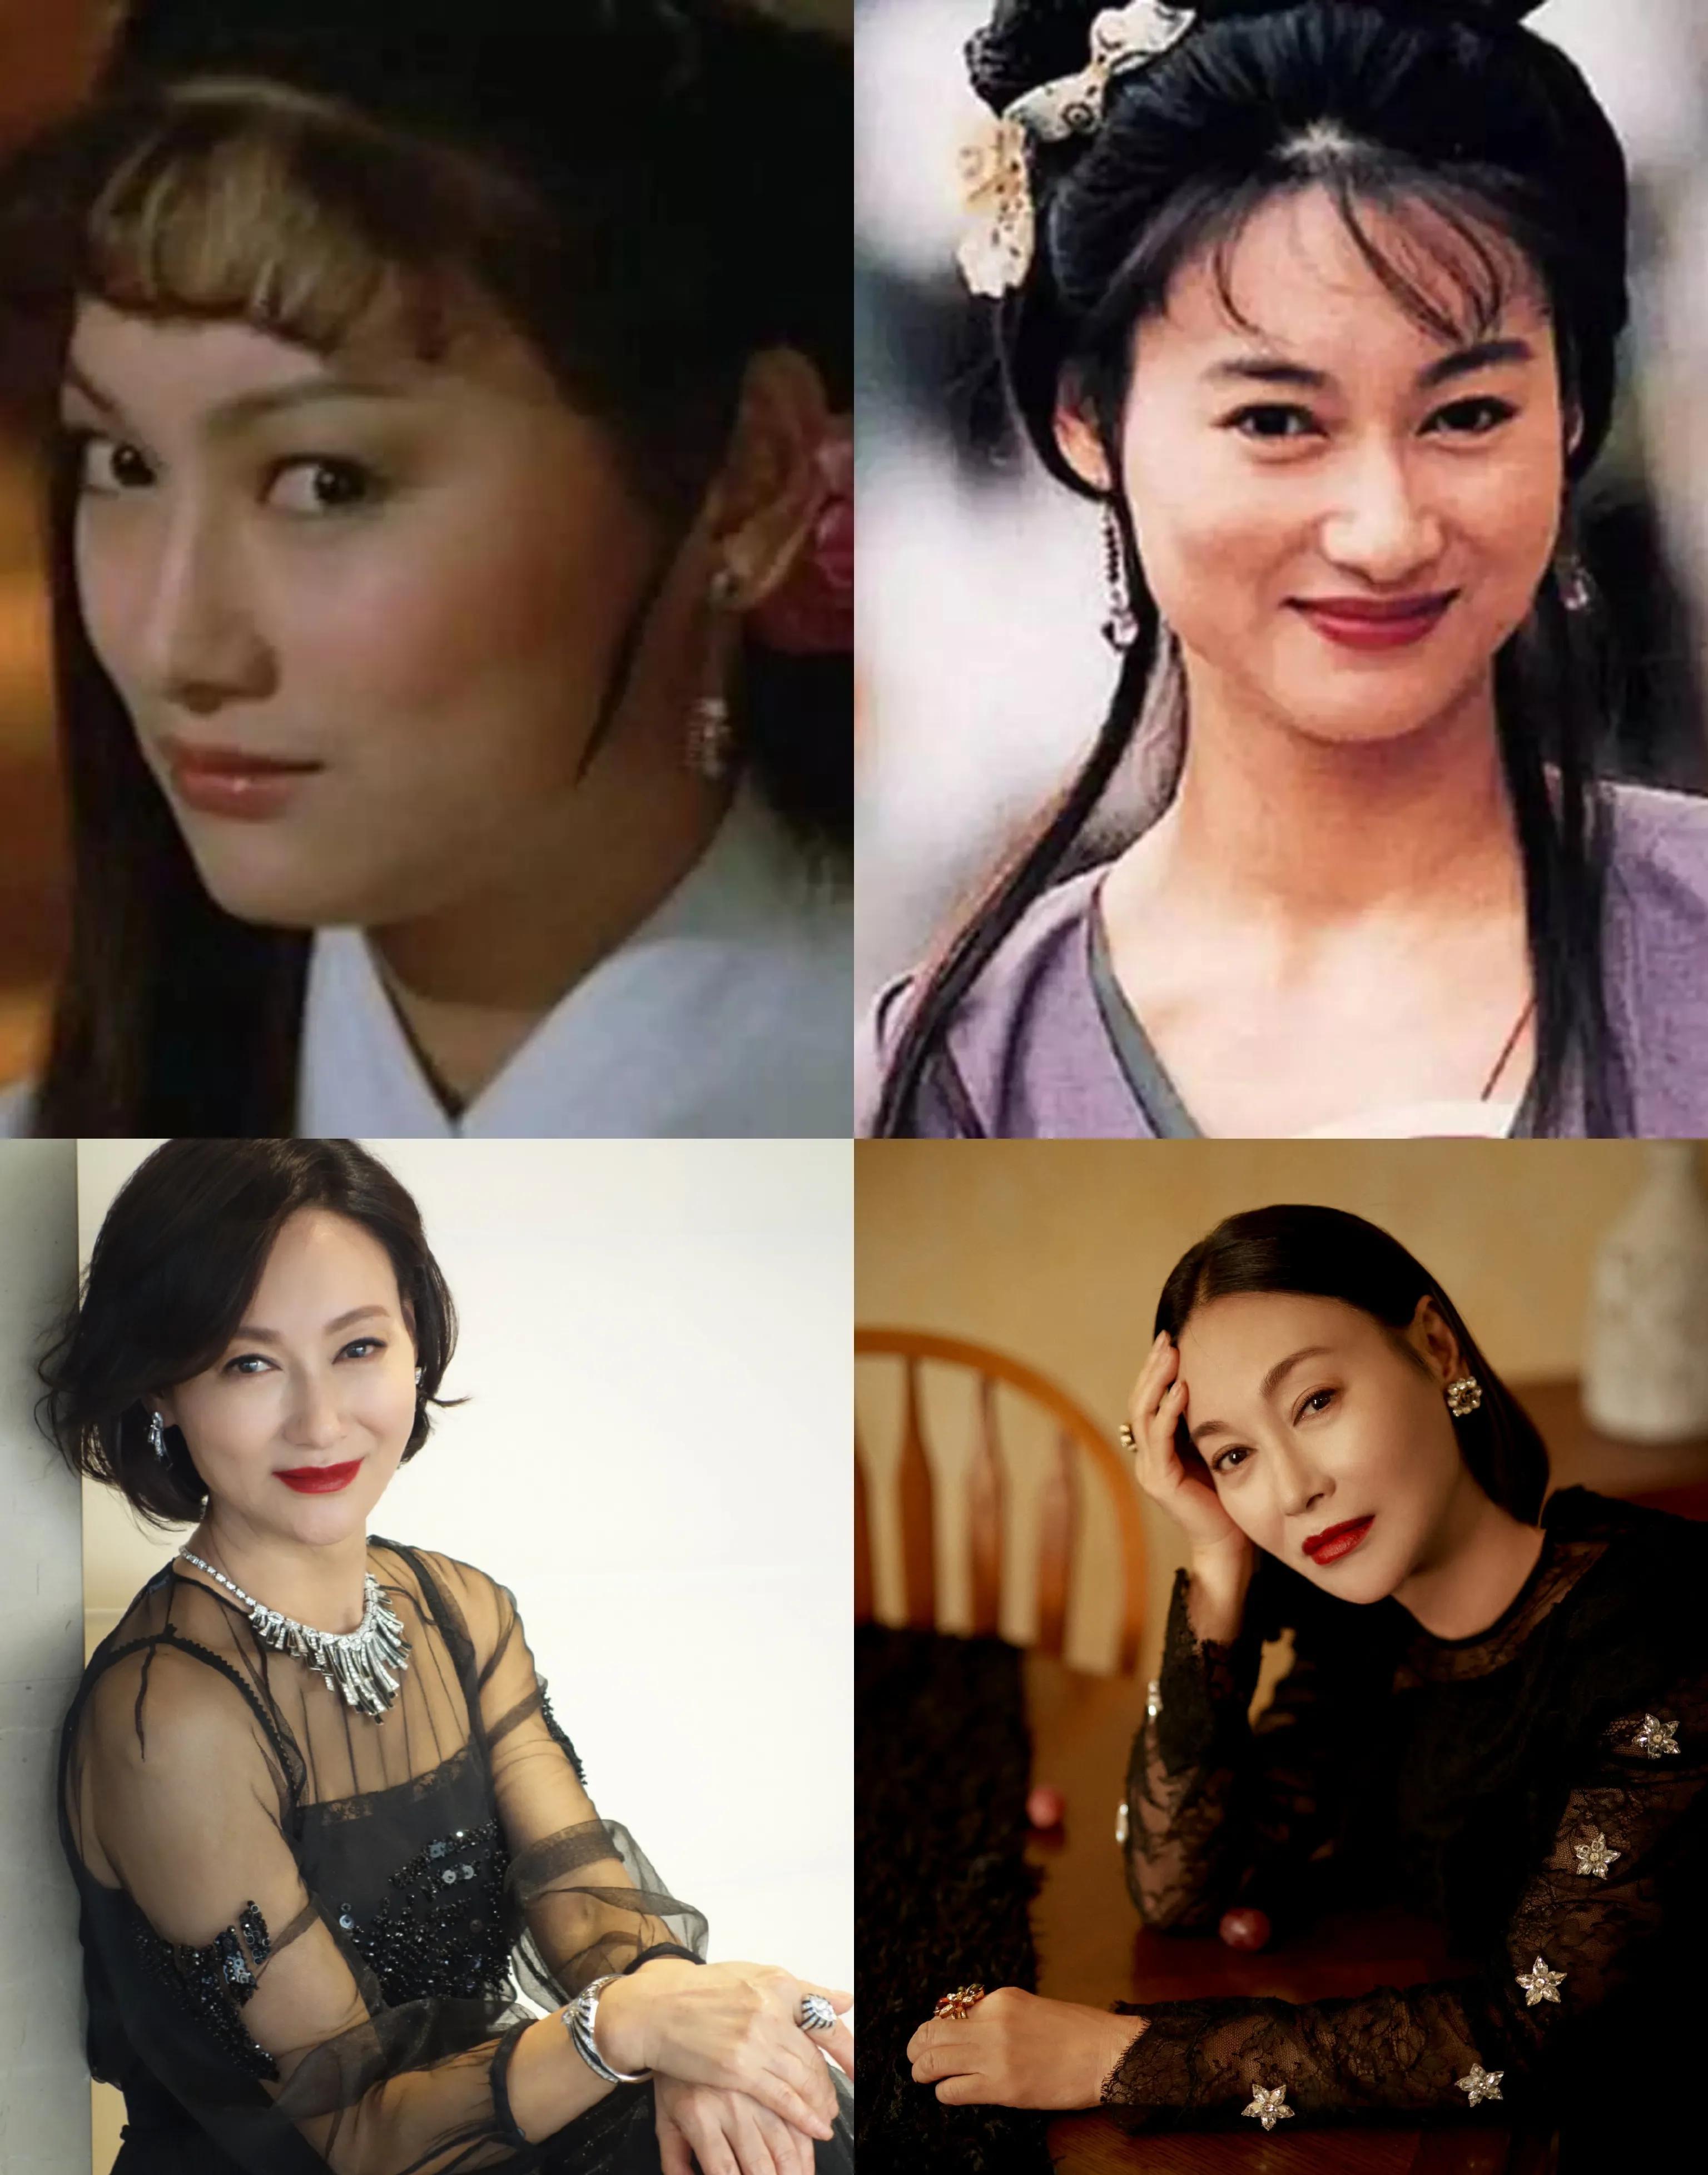 香港老一辈女演员名单图片